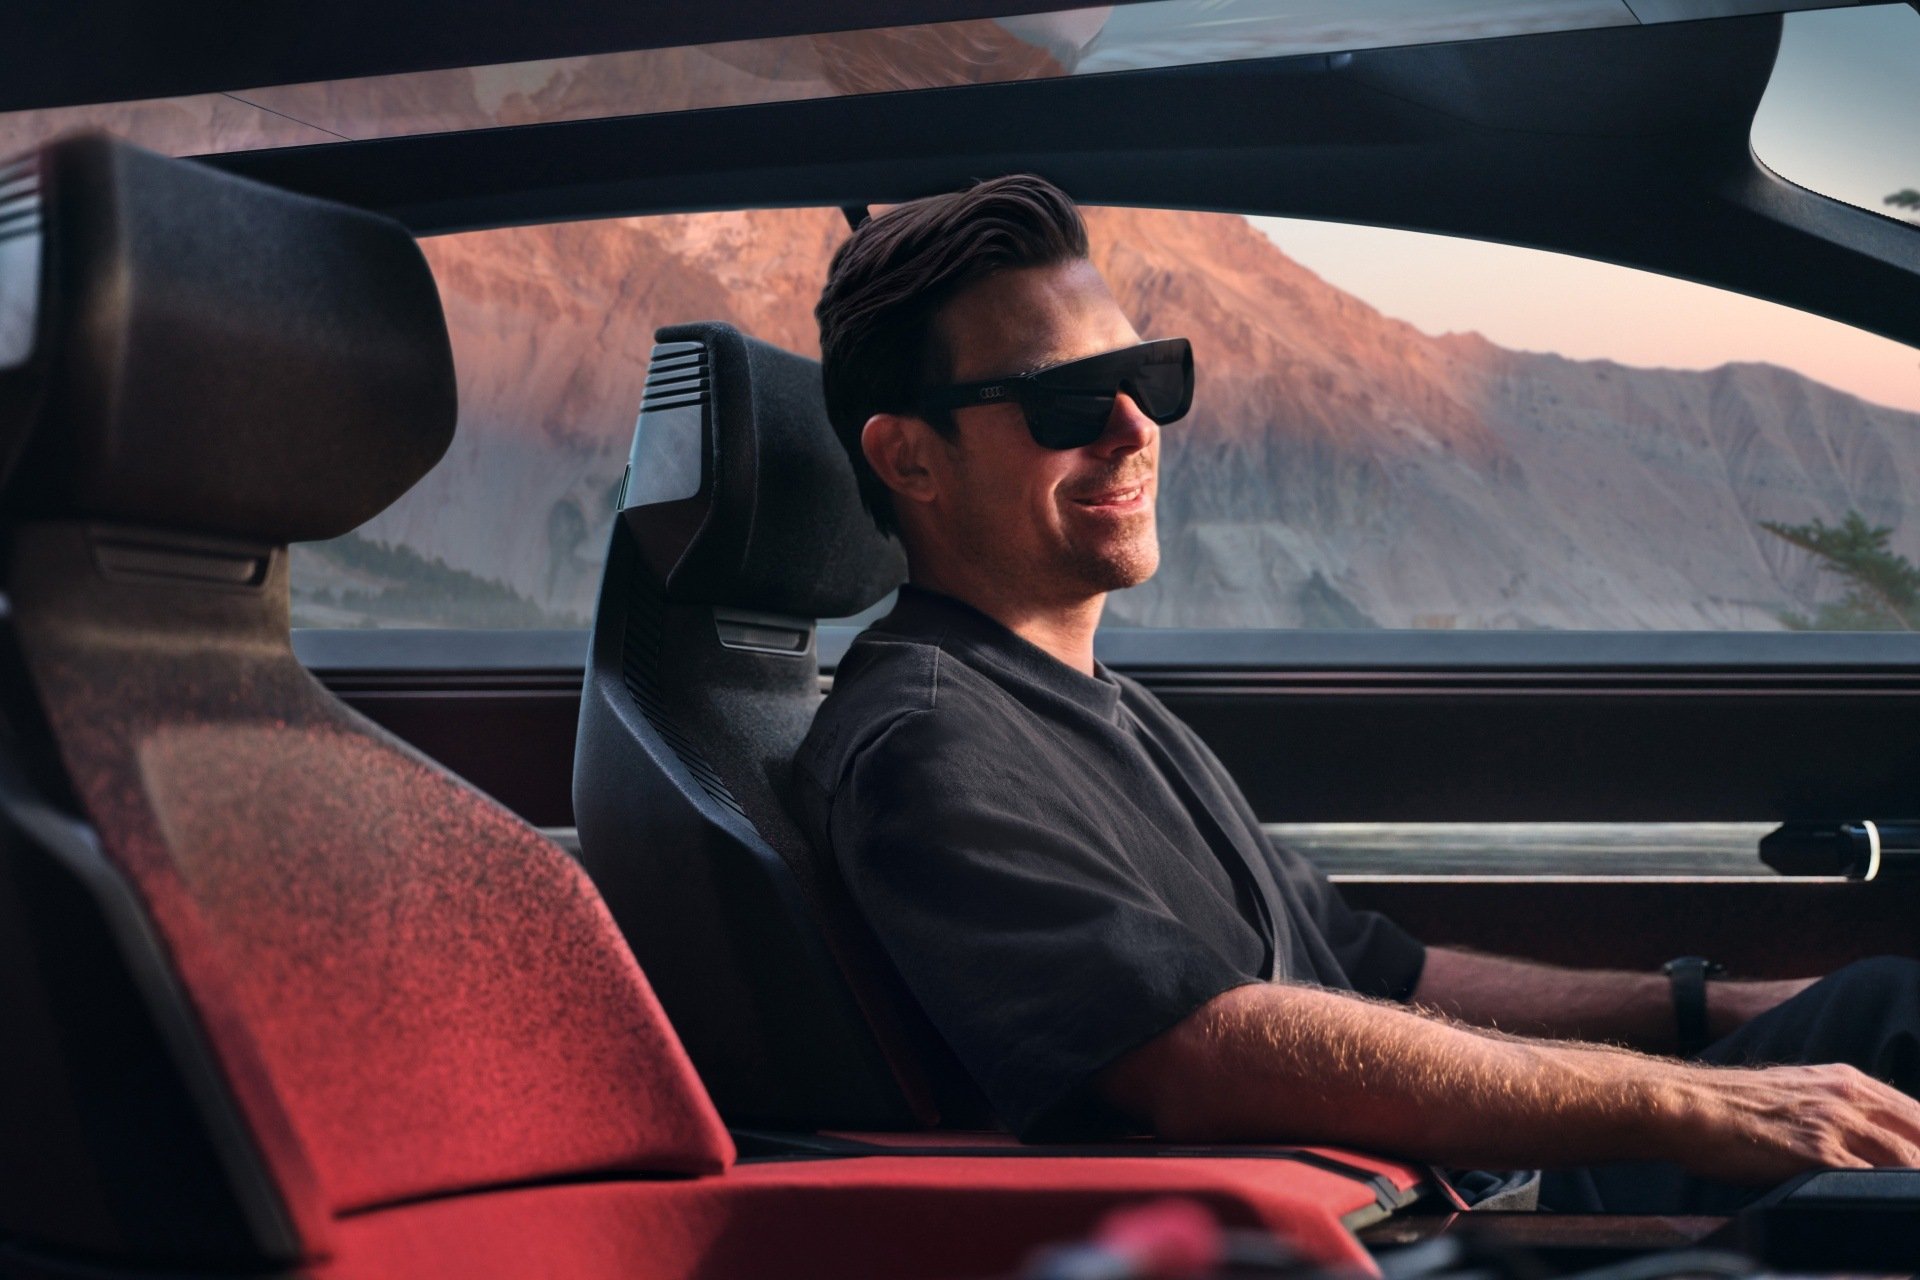 Hayden Cox sedi v konceptnem vozilu Audi activesphere in nosi očala za obogateno resničnost.